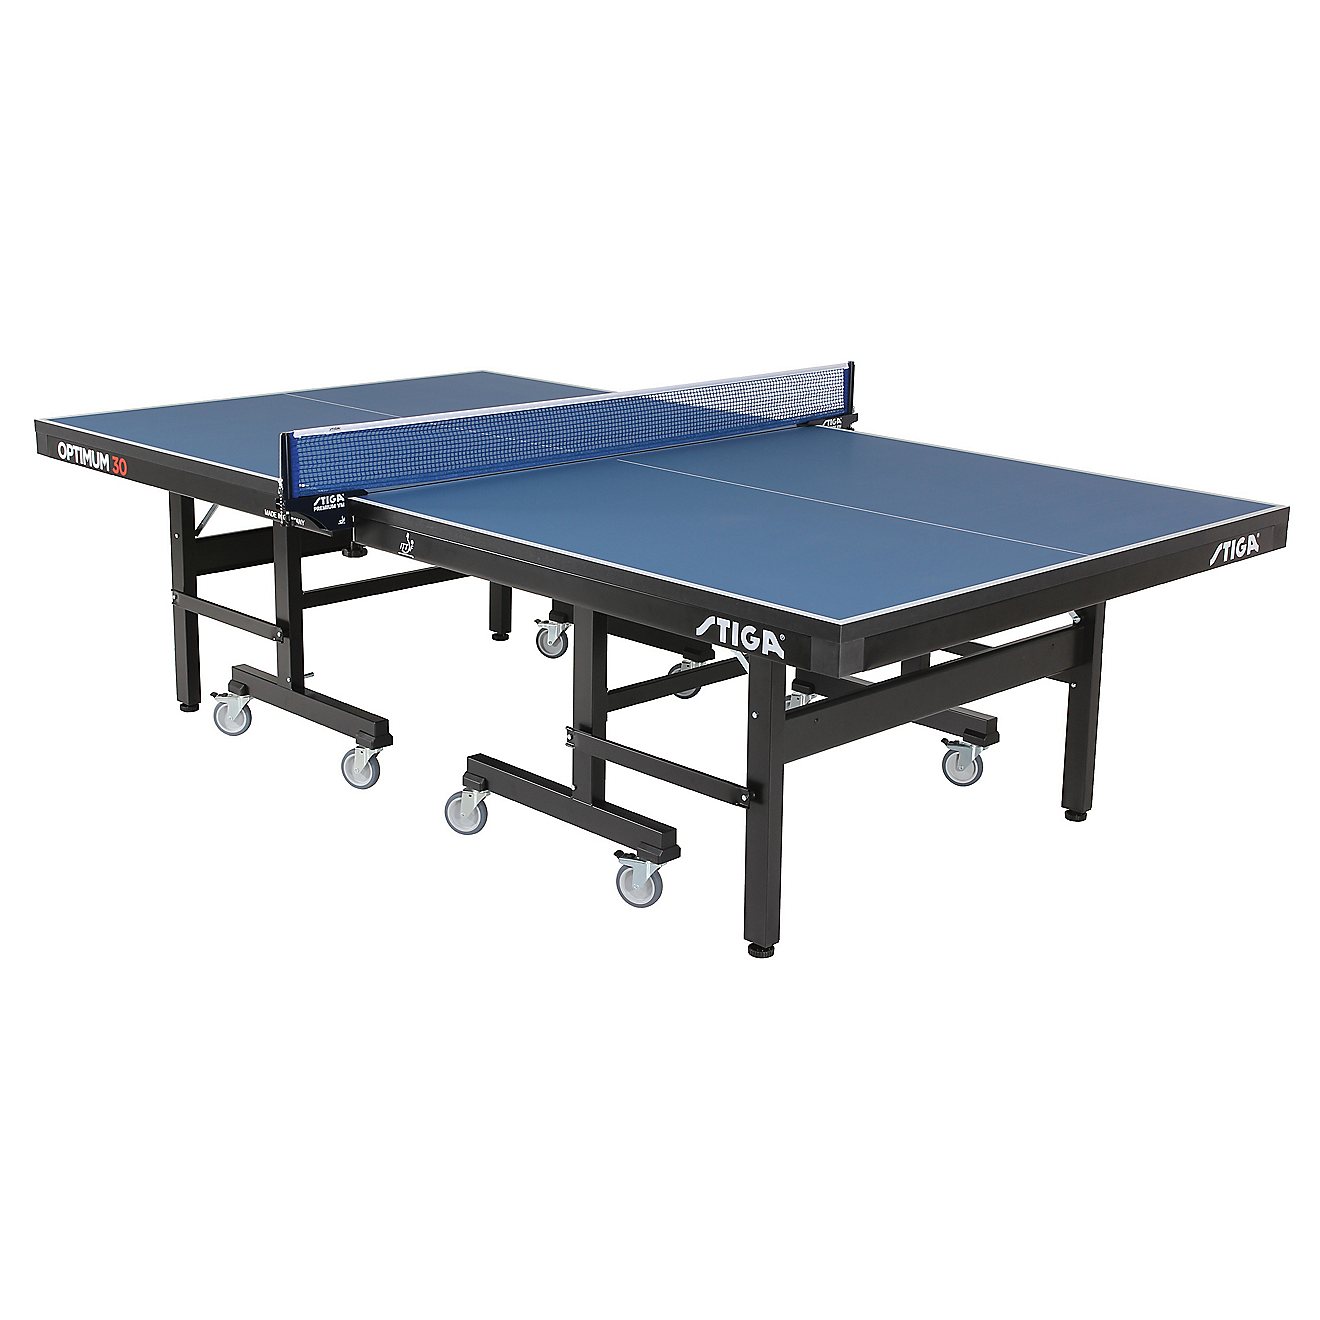 STIGA Optimum 30 Table Tennis Table                                                                                              - view number 1